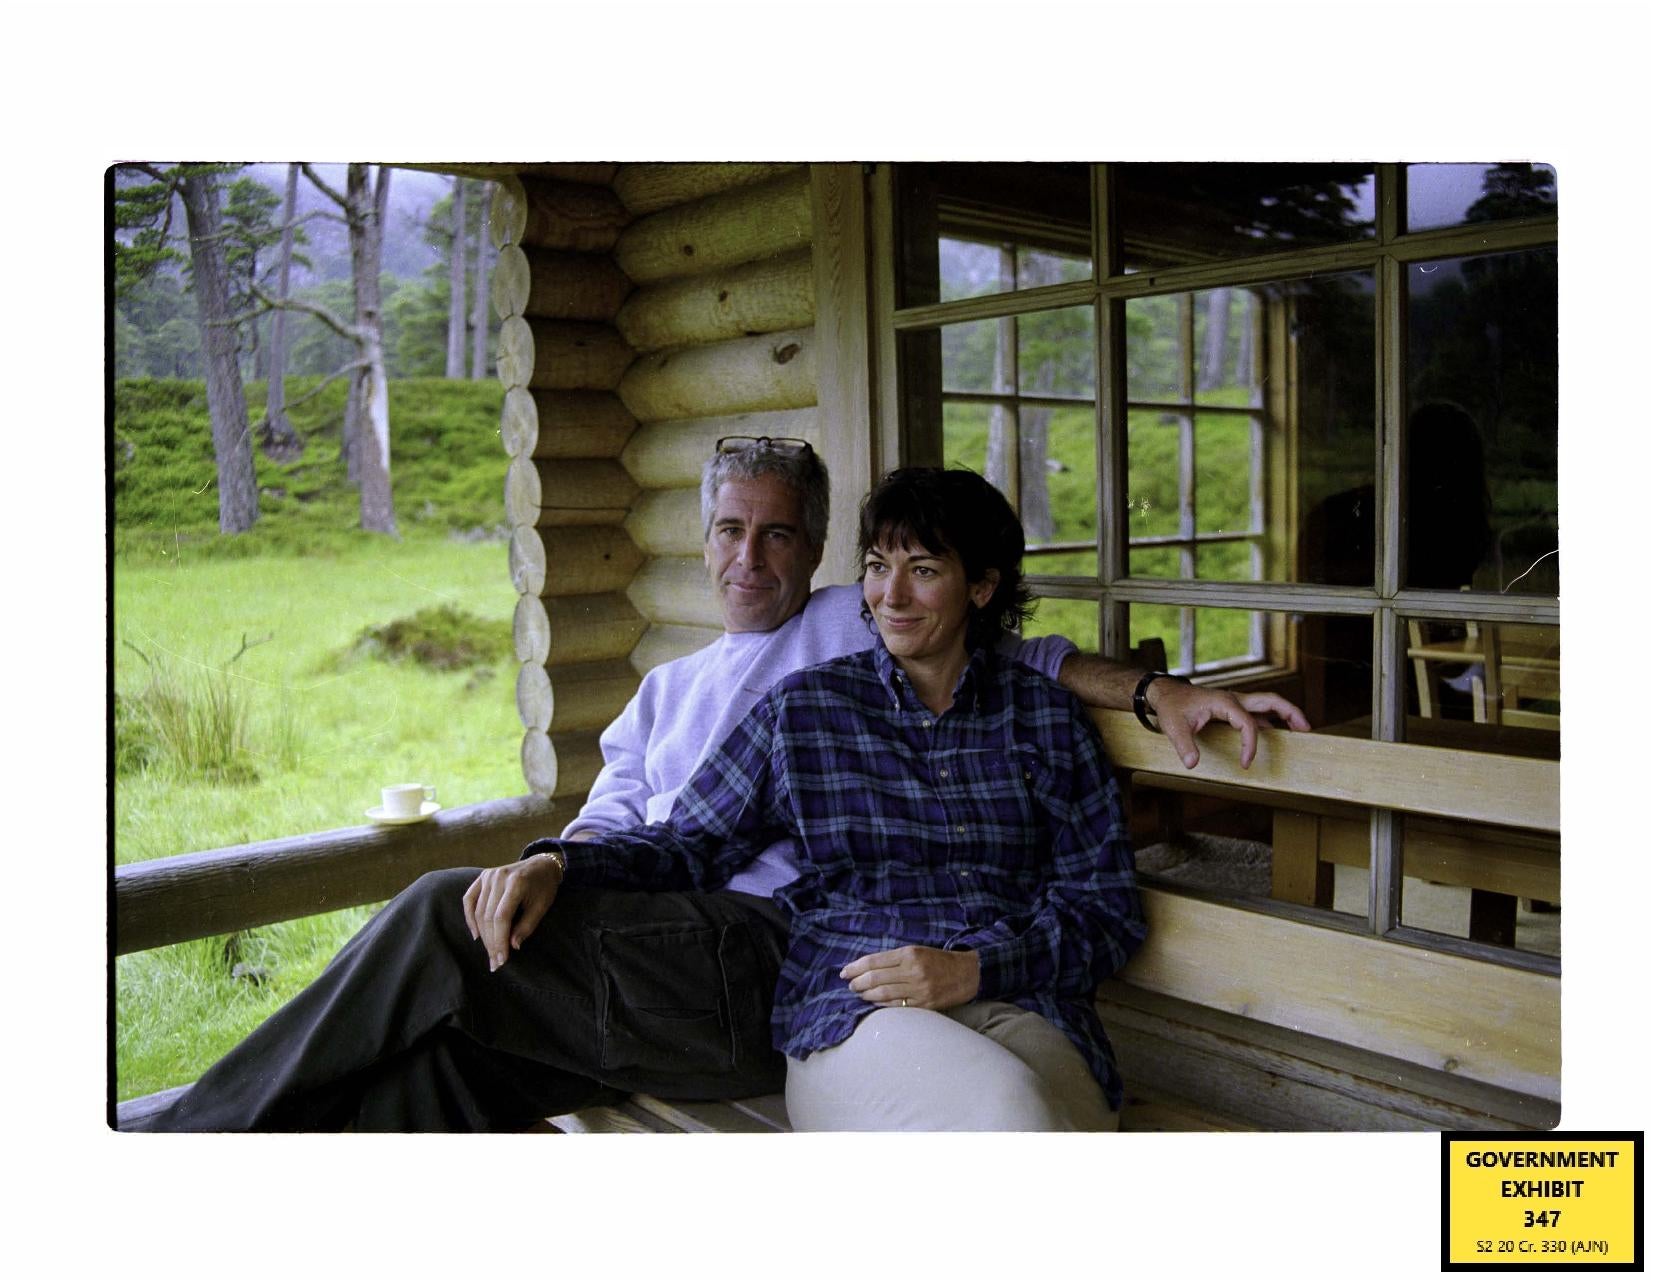 Ghislaine Maxwell con Jeffrey Epstein en una cabaña en la finca de la Reina, Balmoral